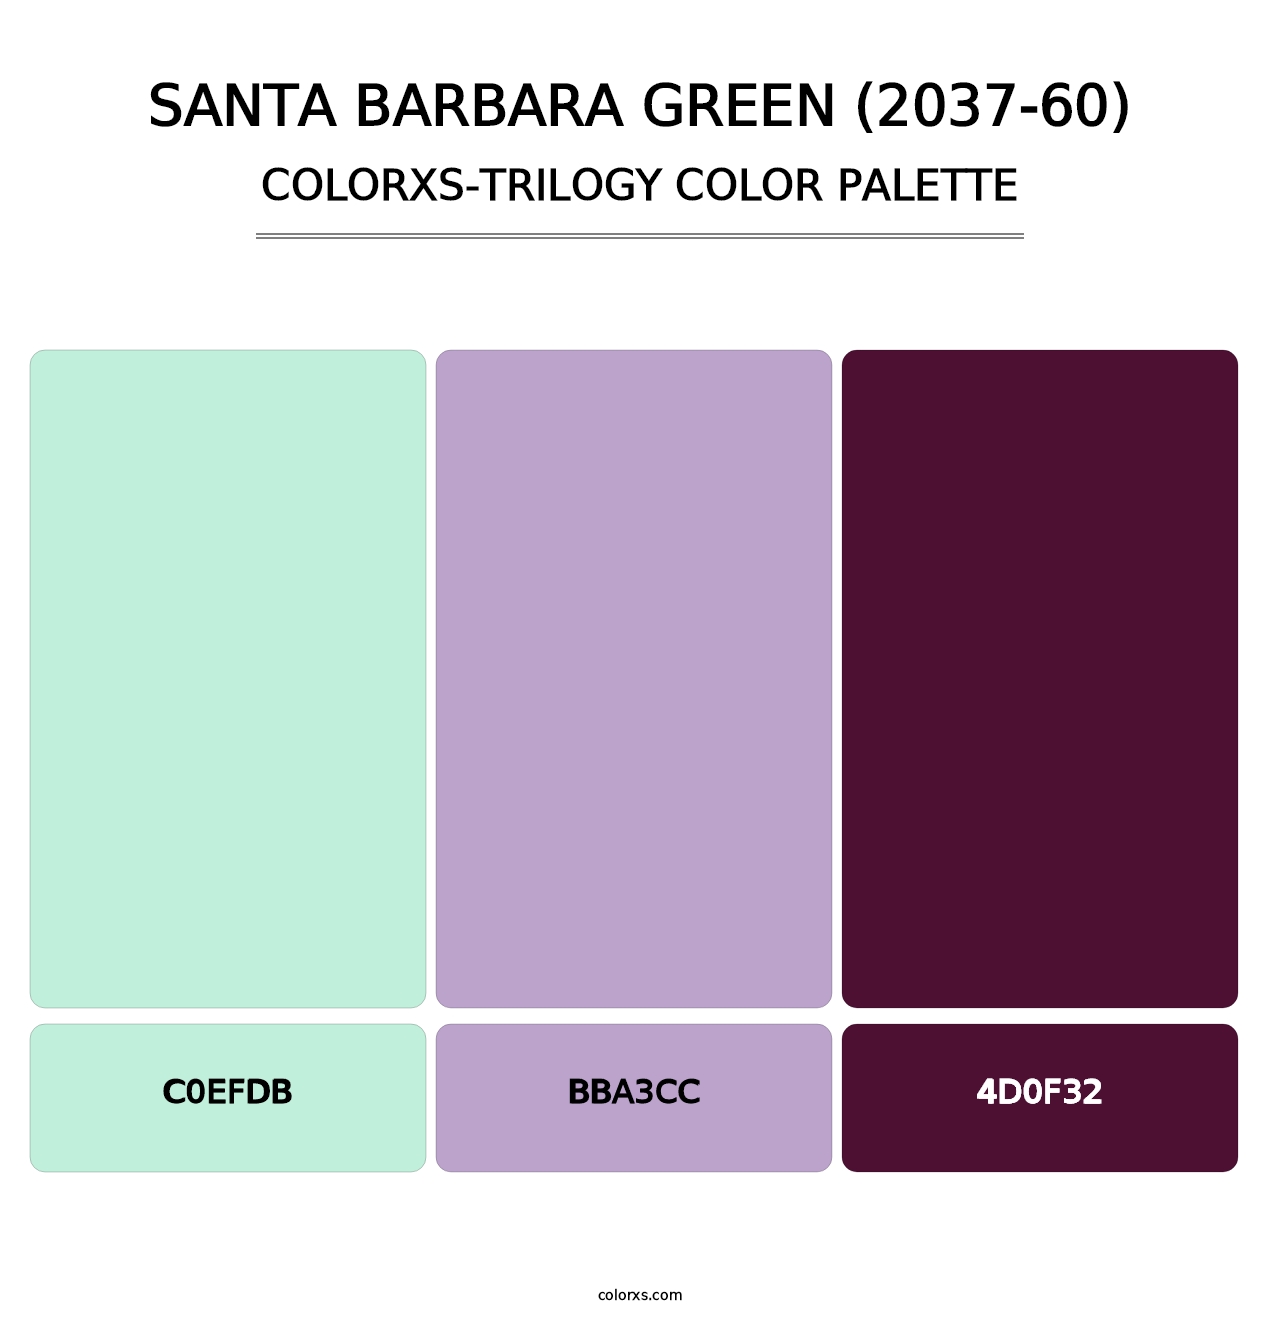 Santa Barbara Green (2037-60) - Colorxs Trilogy Palette